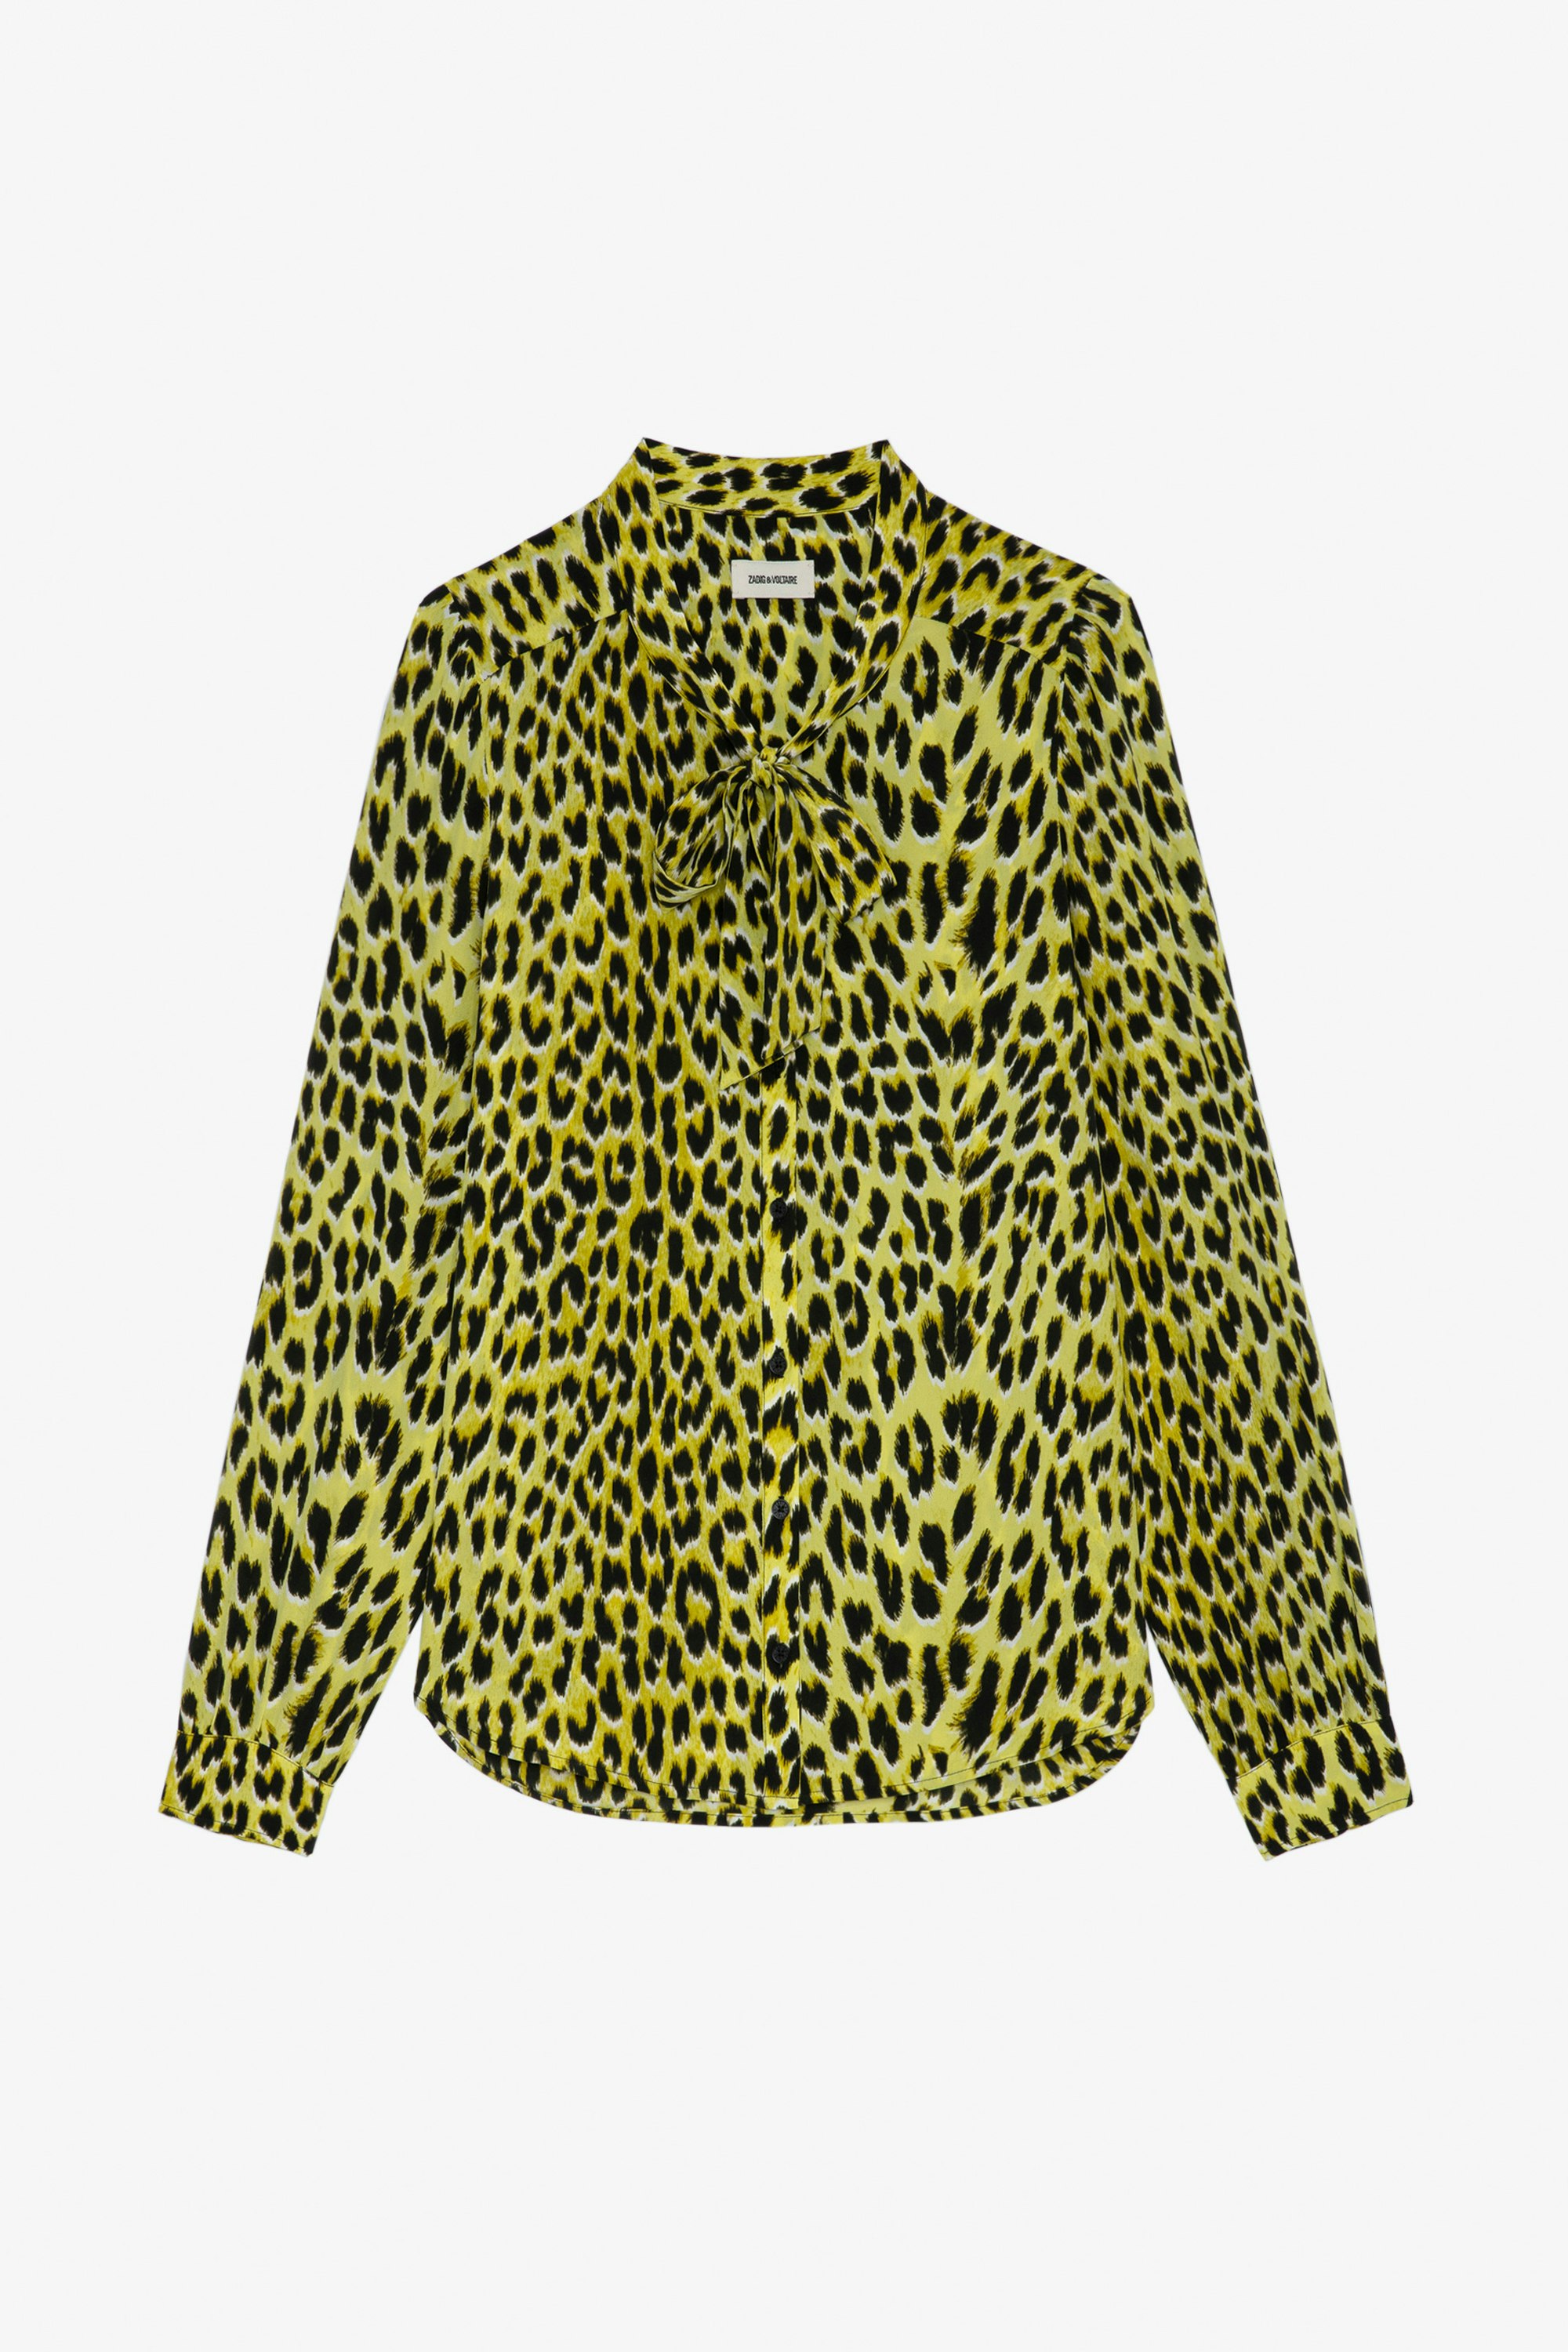 Blusa Taos Leopardata Seta - Blusa in seta gialla da donna con stampa leopardata e colletto alla lavallière.